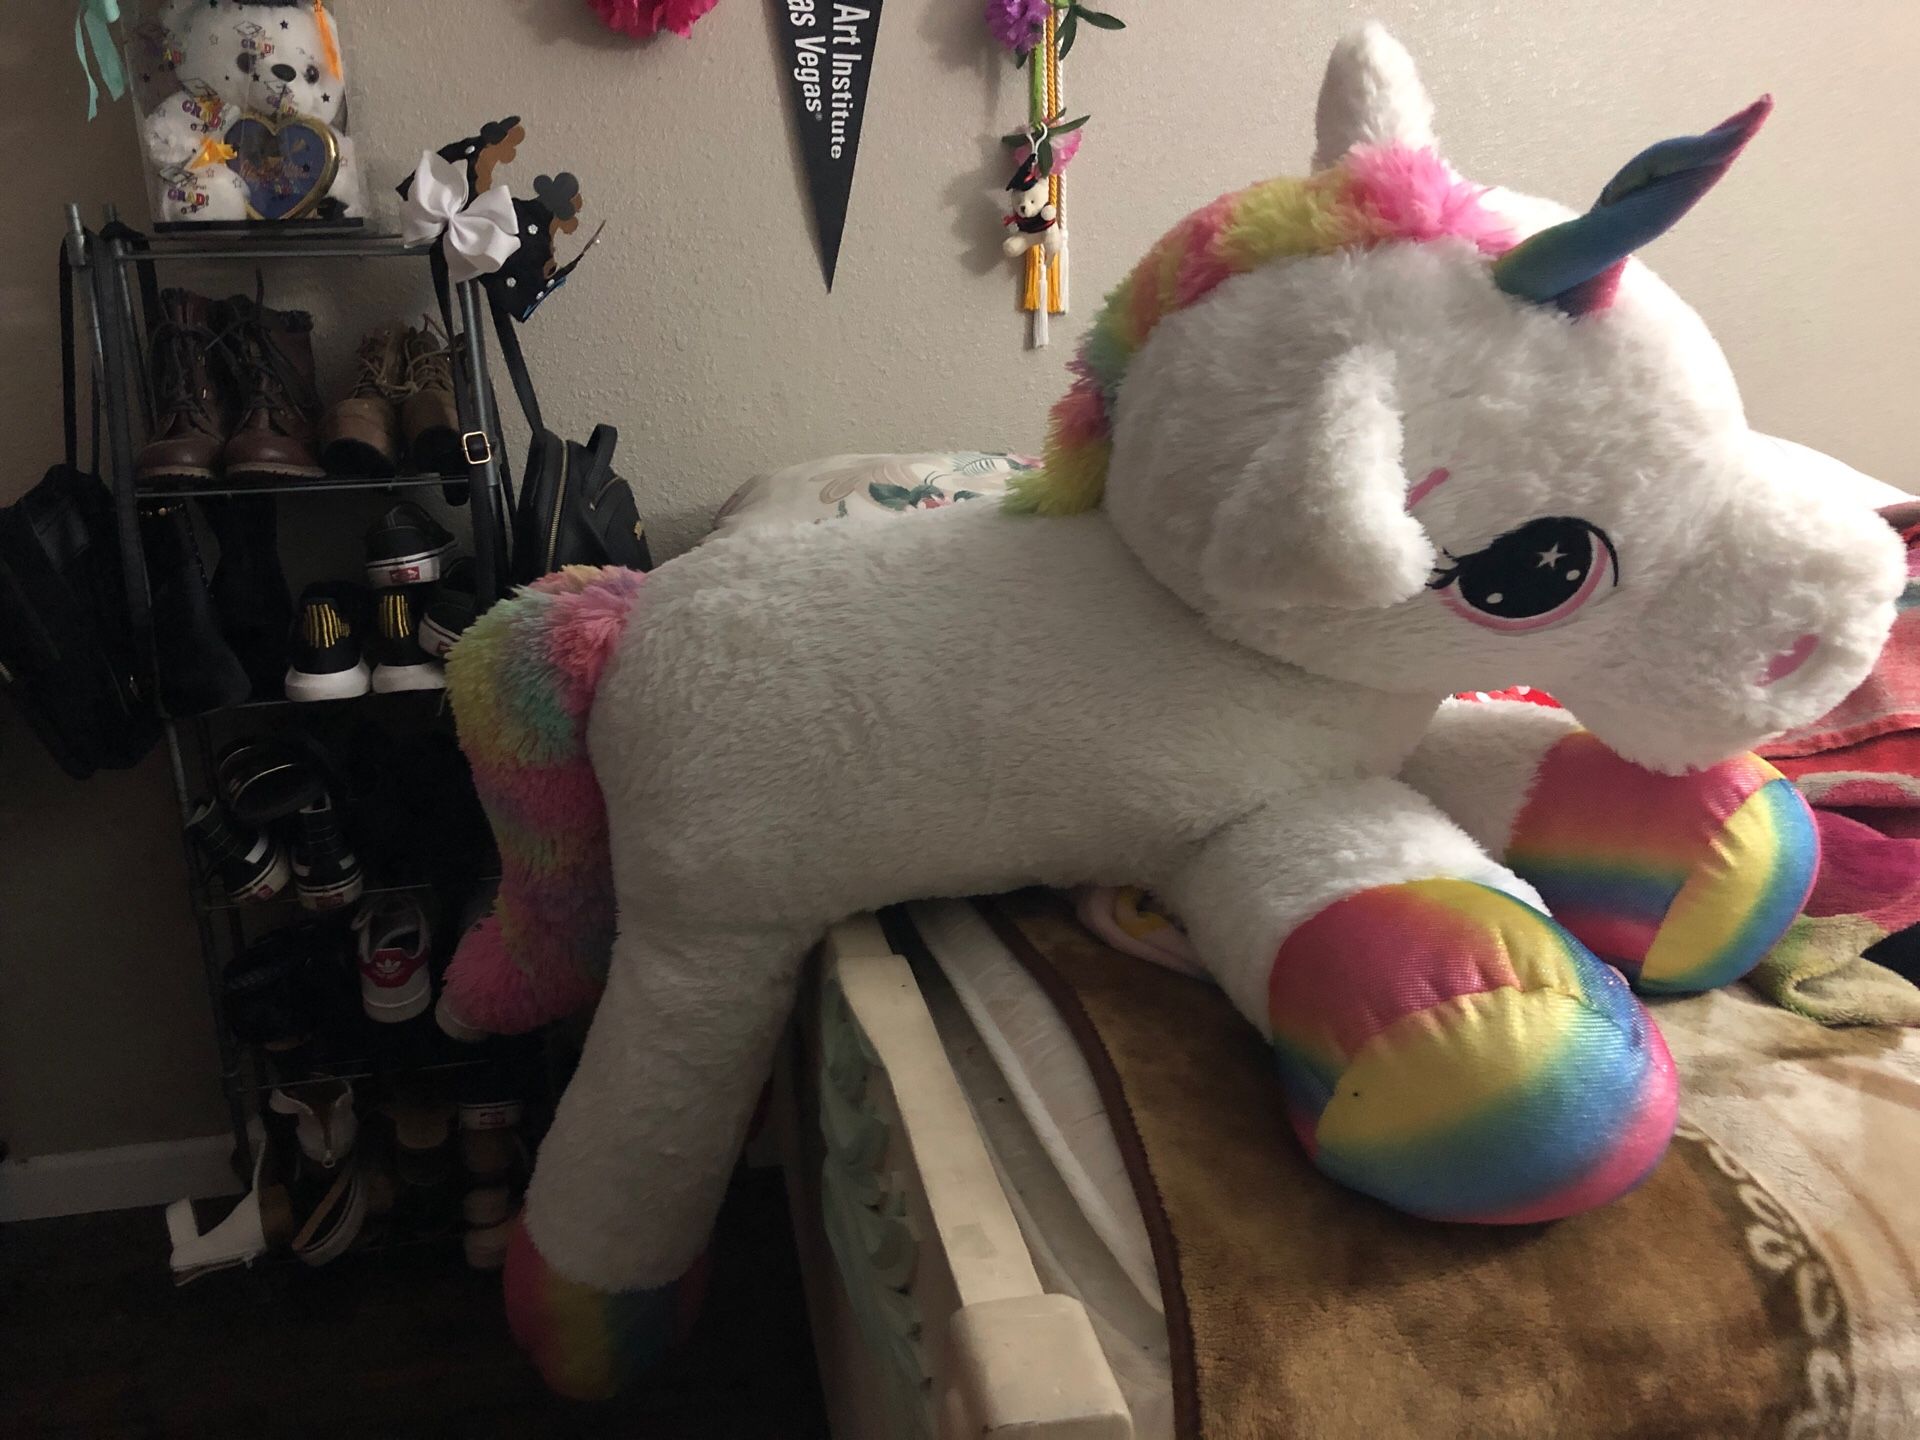 Giant unicorn plushie